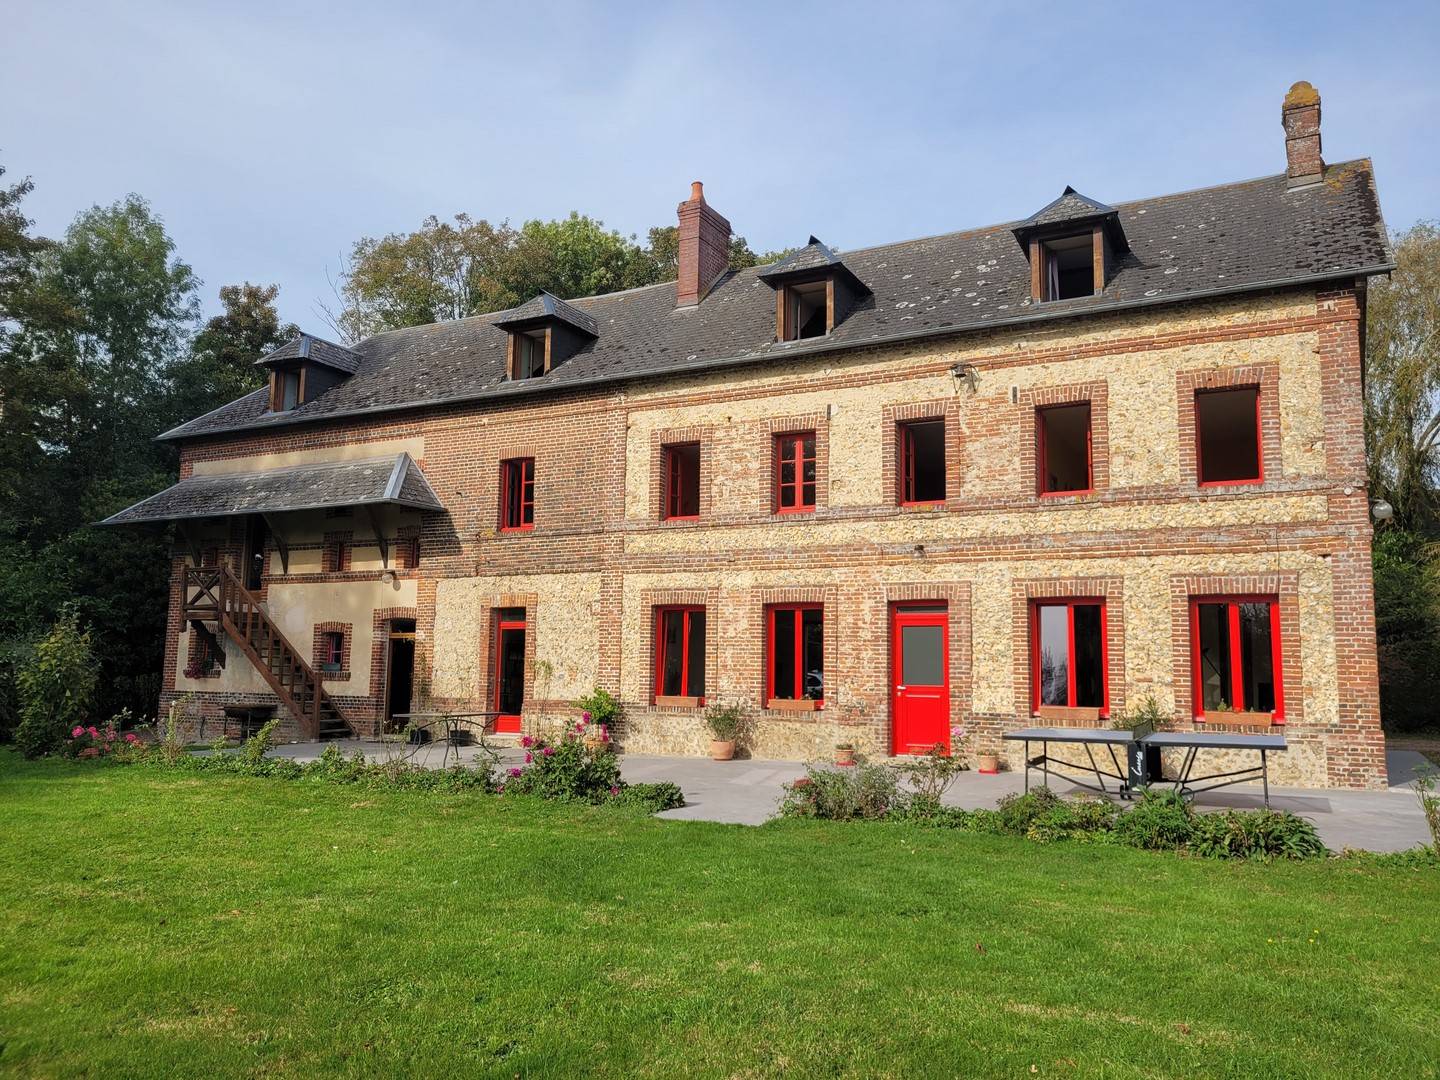  A acquérir vaste maison en briques et silex sur presque 6 000 m² de terrain, avec dépendances, proche du centre-ville de Lisieux 14100